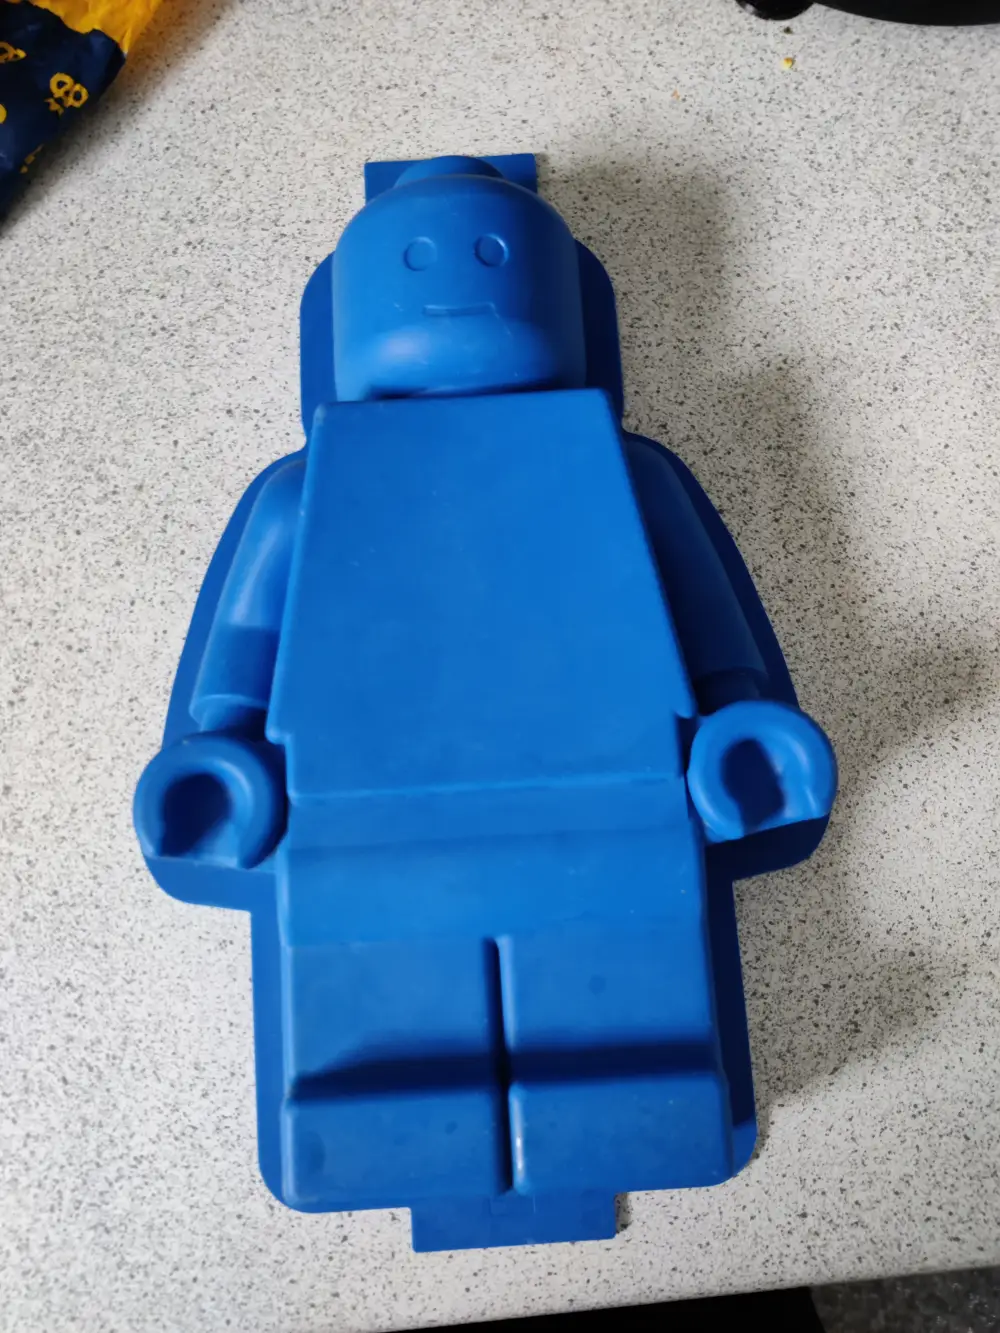 Køb LEGO Silicone bageform af på Reshopper · Shop secondhand til børn, mor og bolig